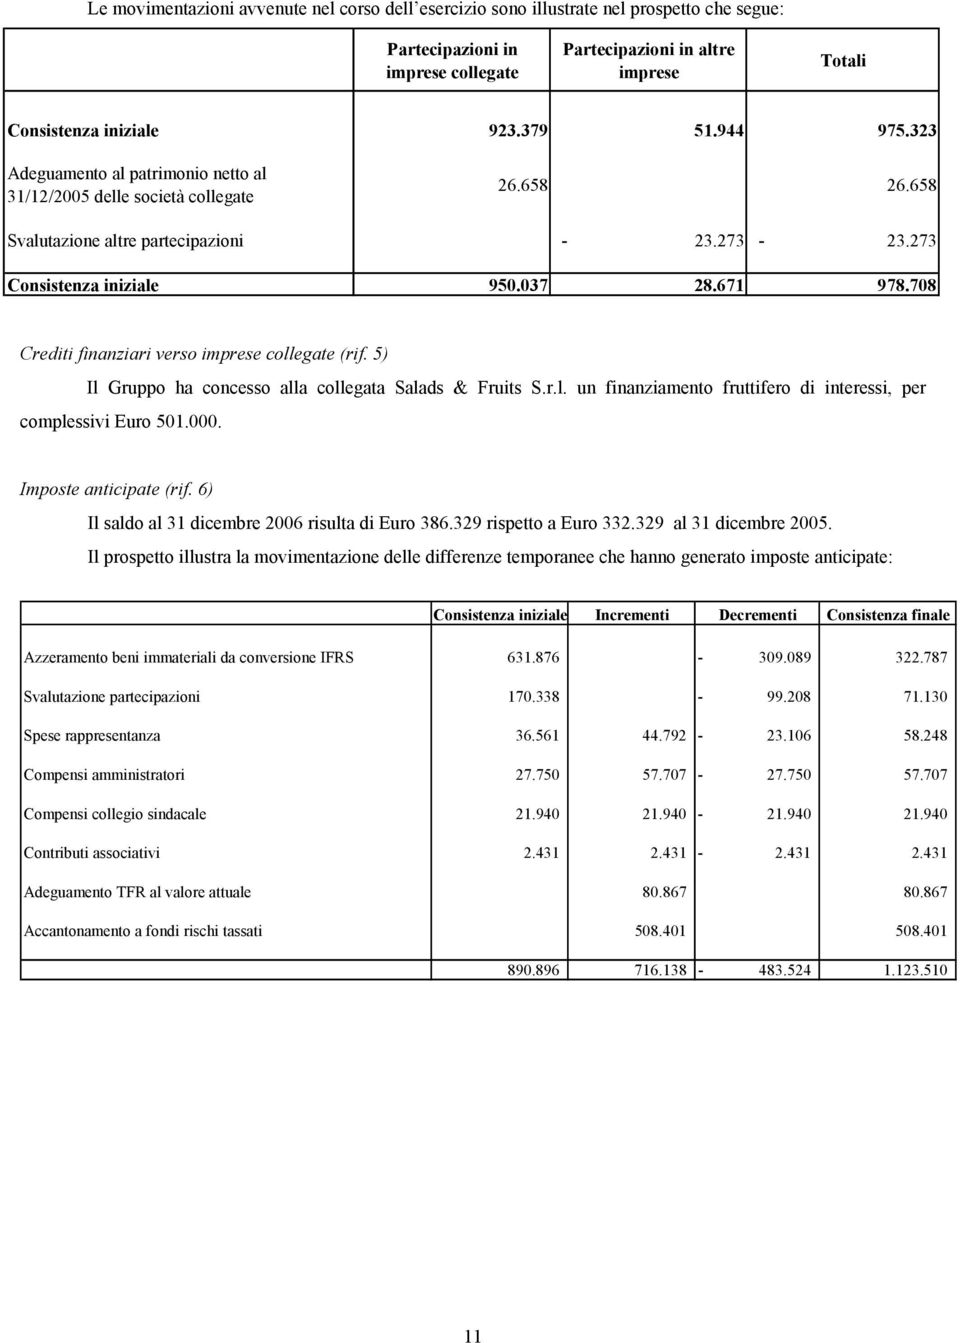 708 Crediti finanziari verso imprese collegate (rif. 5) Il Gruppo ha concesso alla collegata Salads & Fruits S.r.l. un finanziamento fruttifero di interessi, per complessivi Euro 501.000.